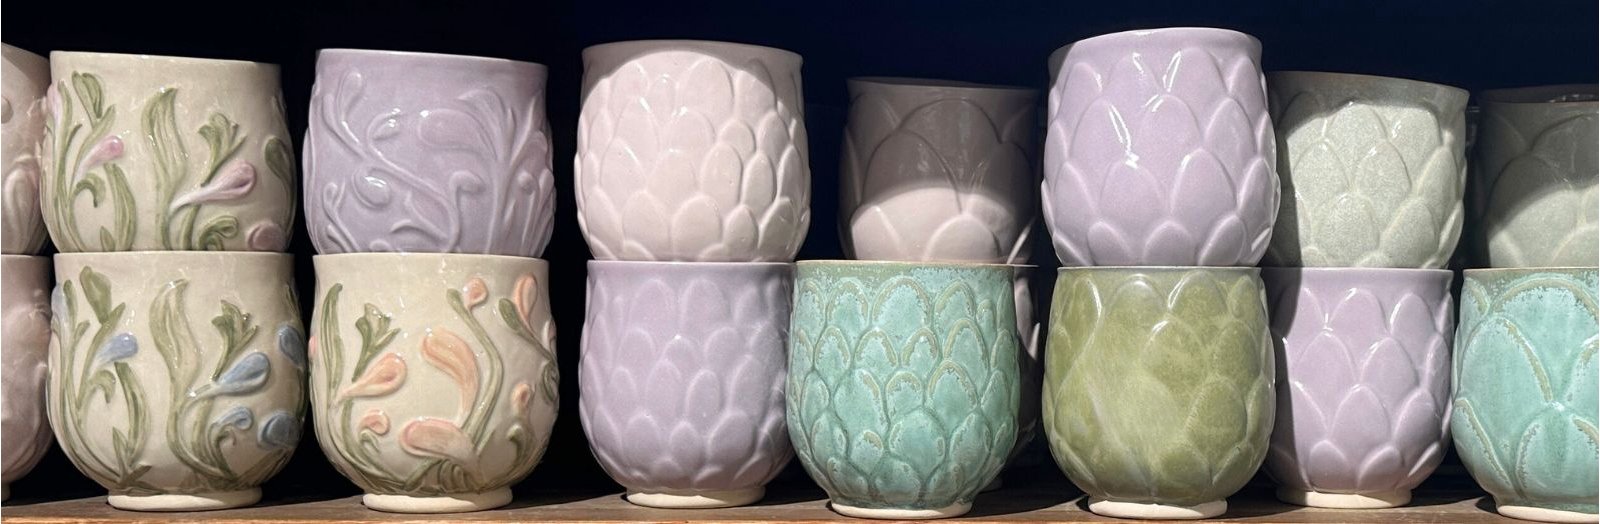 Smukke keramik-kopper